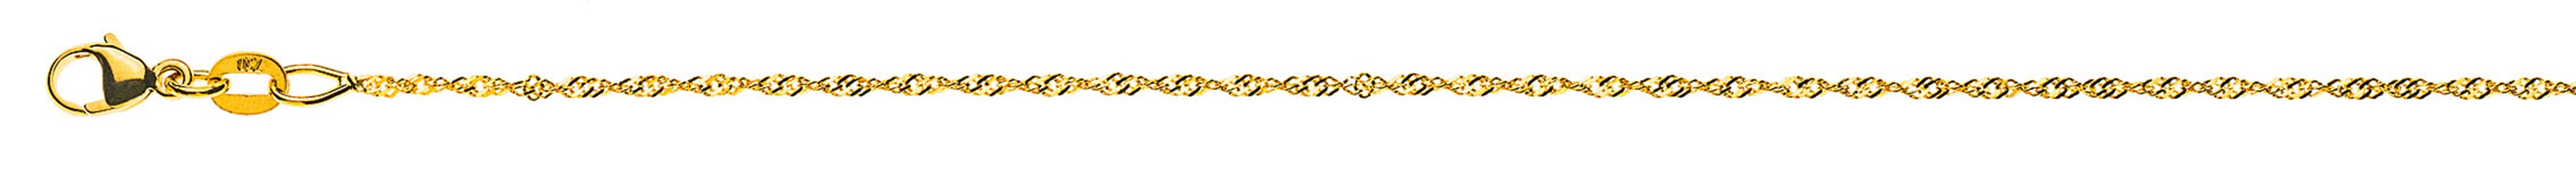 AURONOS Prestige Necklace Yellow Gold 18K Singapore Chain 38cm 1.2mm